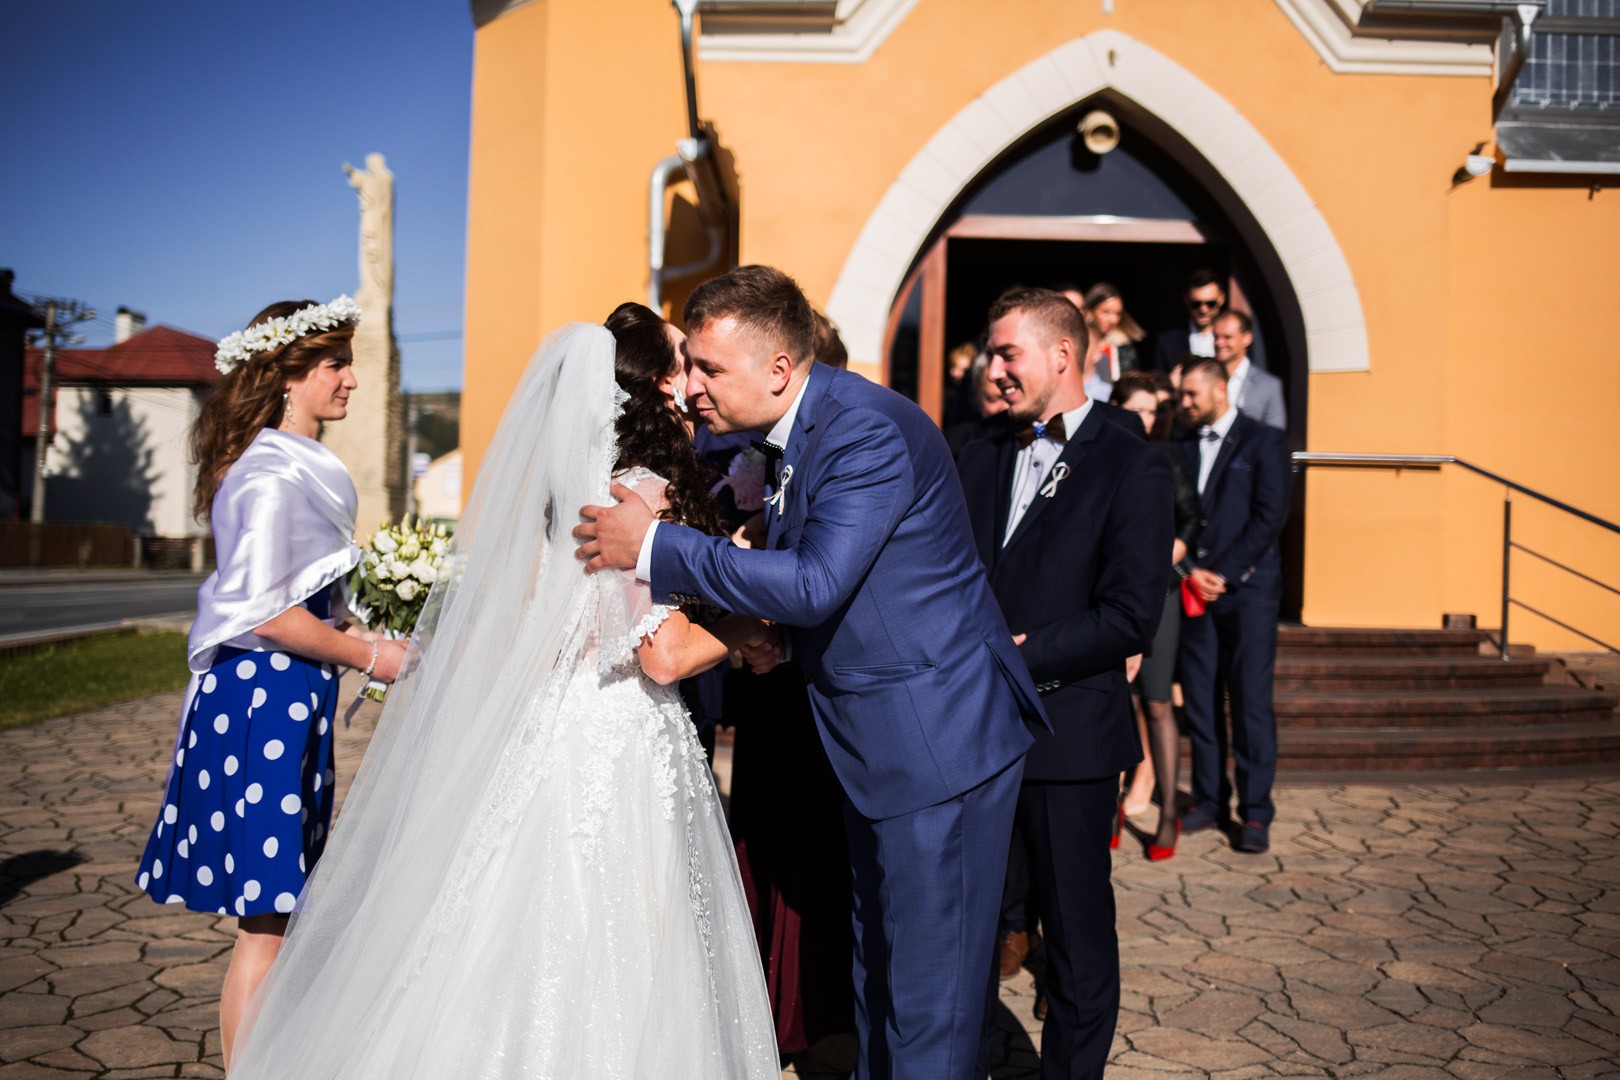 Wedding photos Zdenka and Marko - 0159.jpg